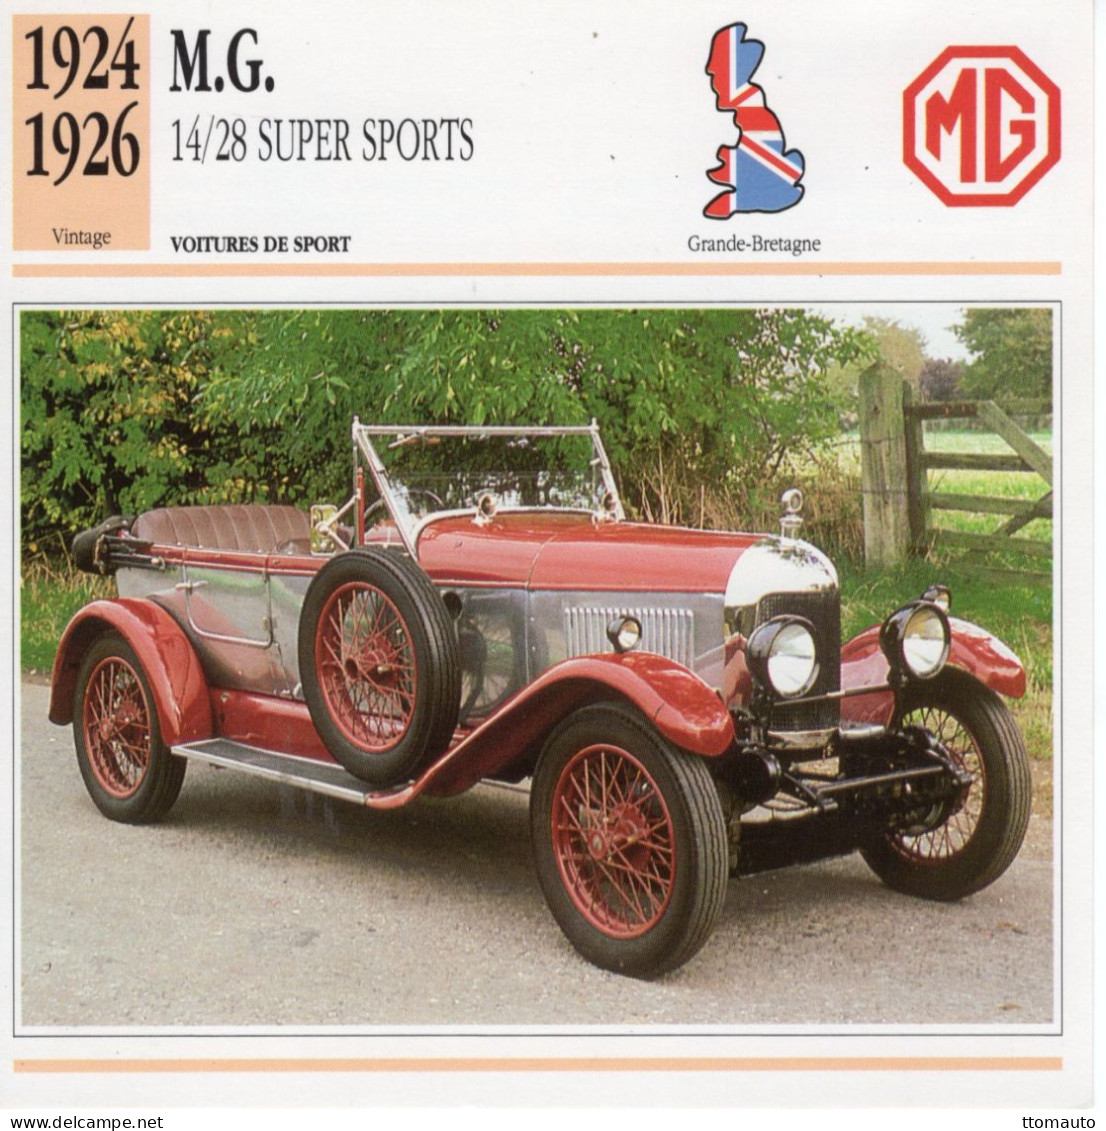 Fiche  -  Voiture De Sport  -  M.G. 14/28 Super Sports  (1926)   -  Carte De Collection - Voitures